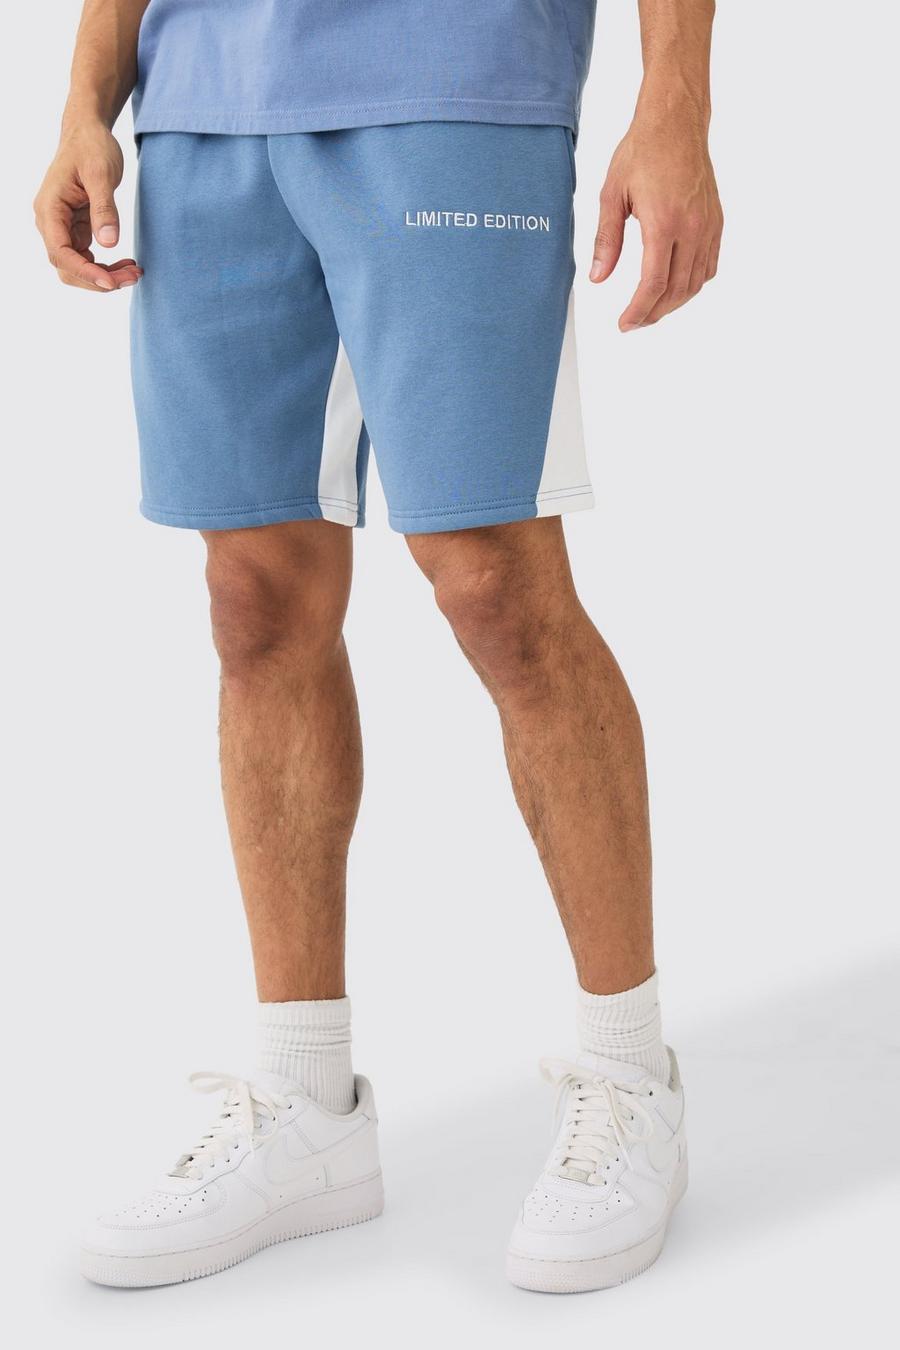 Pantalón corto holgado con refuerzo Limited Edition, Dusty blue